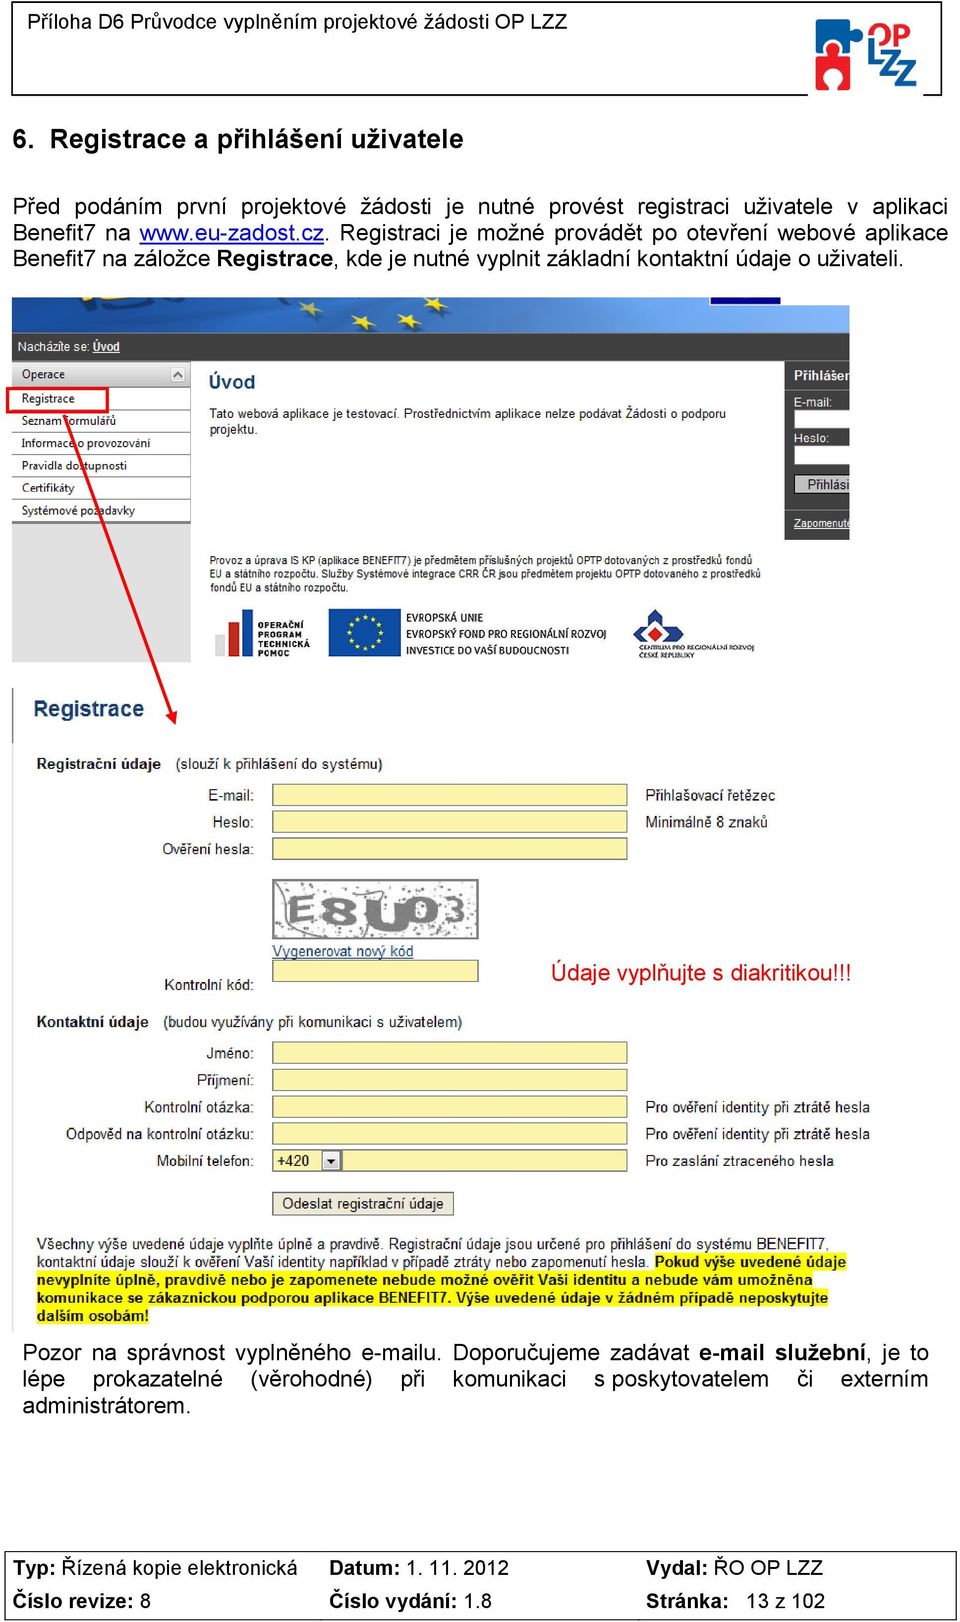 Registraci je možné provádět po otevření webové aplikace Benefit7 na záložce Registrace, kde je nutné vyplnit základní kontaktní údaje o